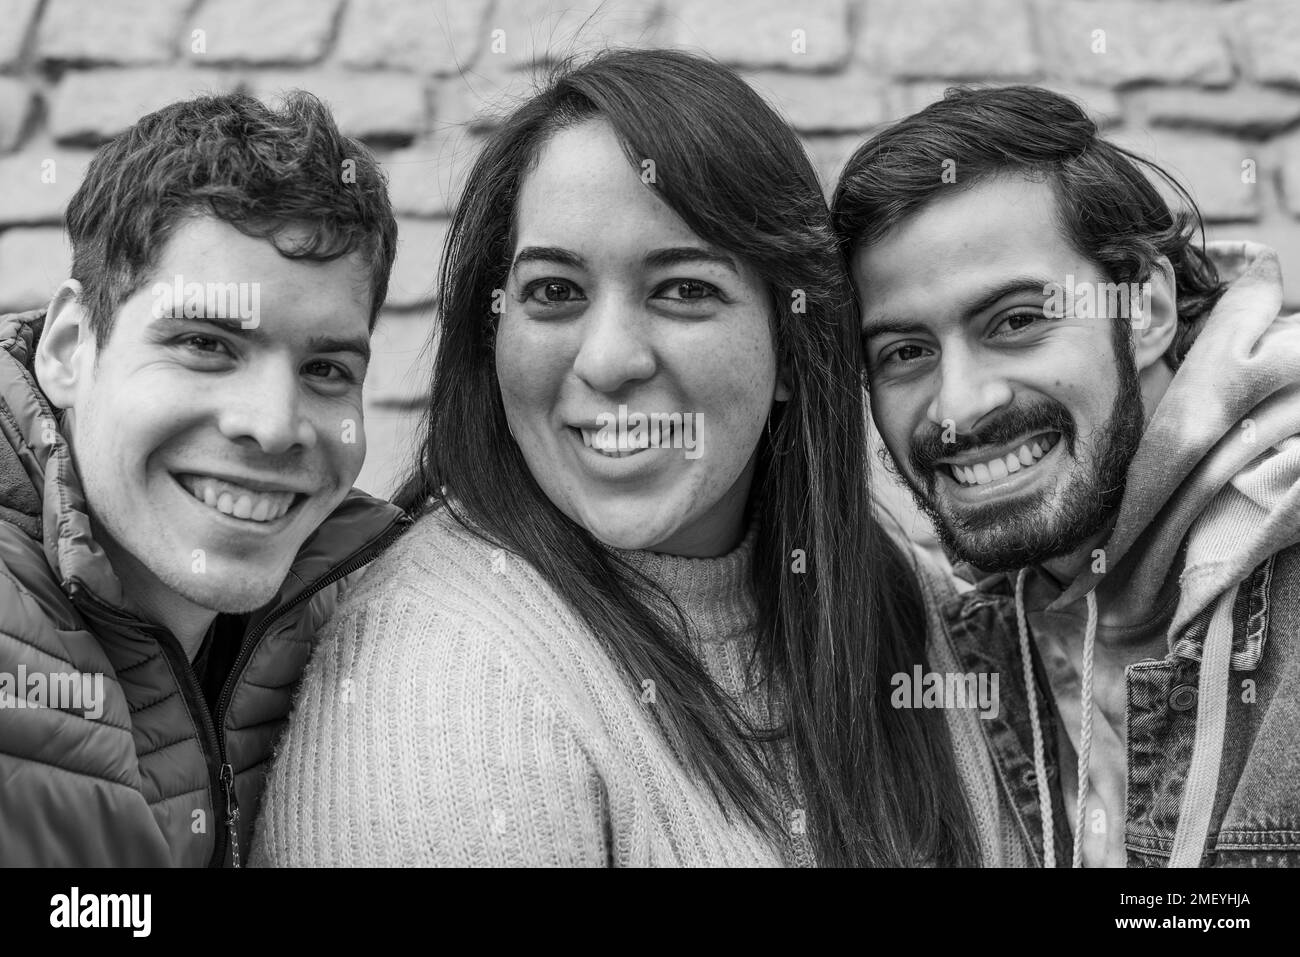 Porträt von drei glücklichen Freunden in schwarz-weiß. Sie schauen auf die Kamera Stockfoto